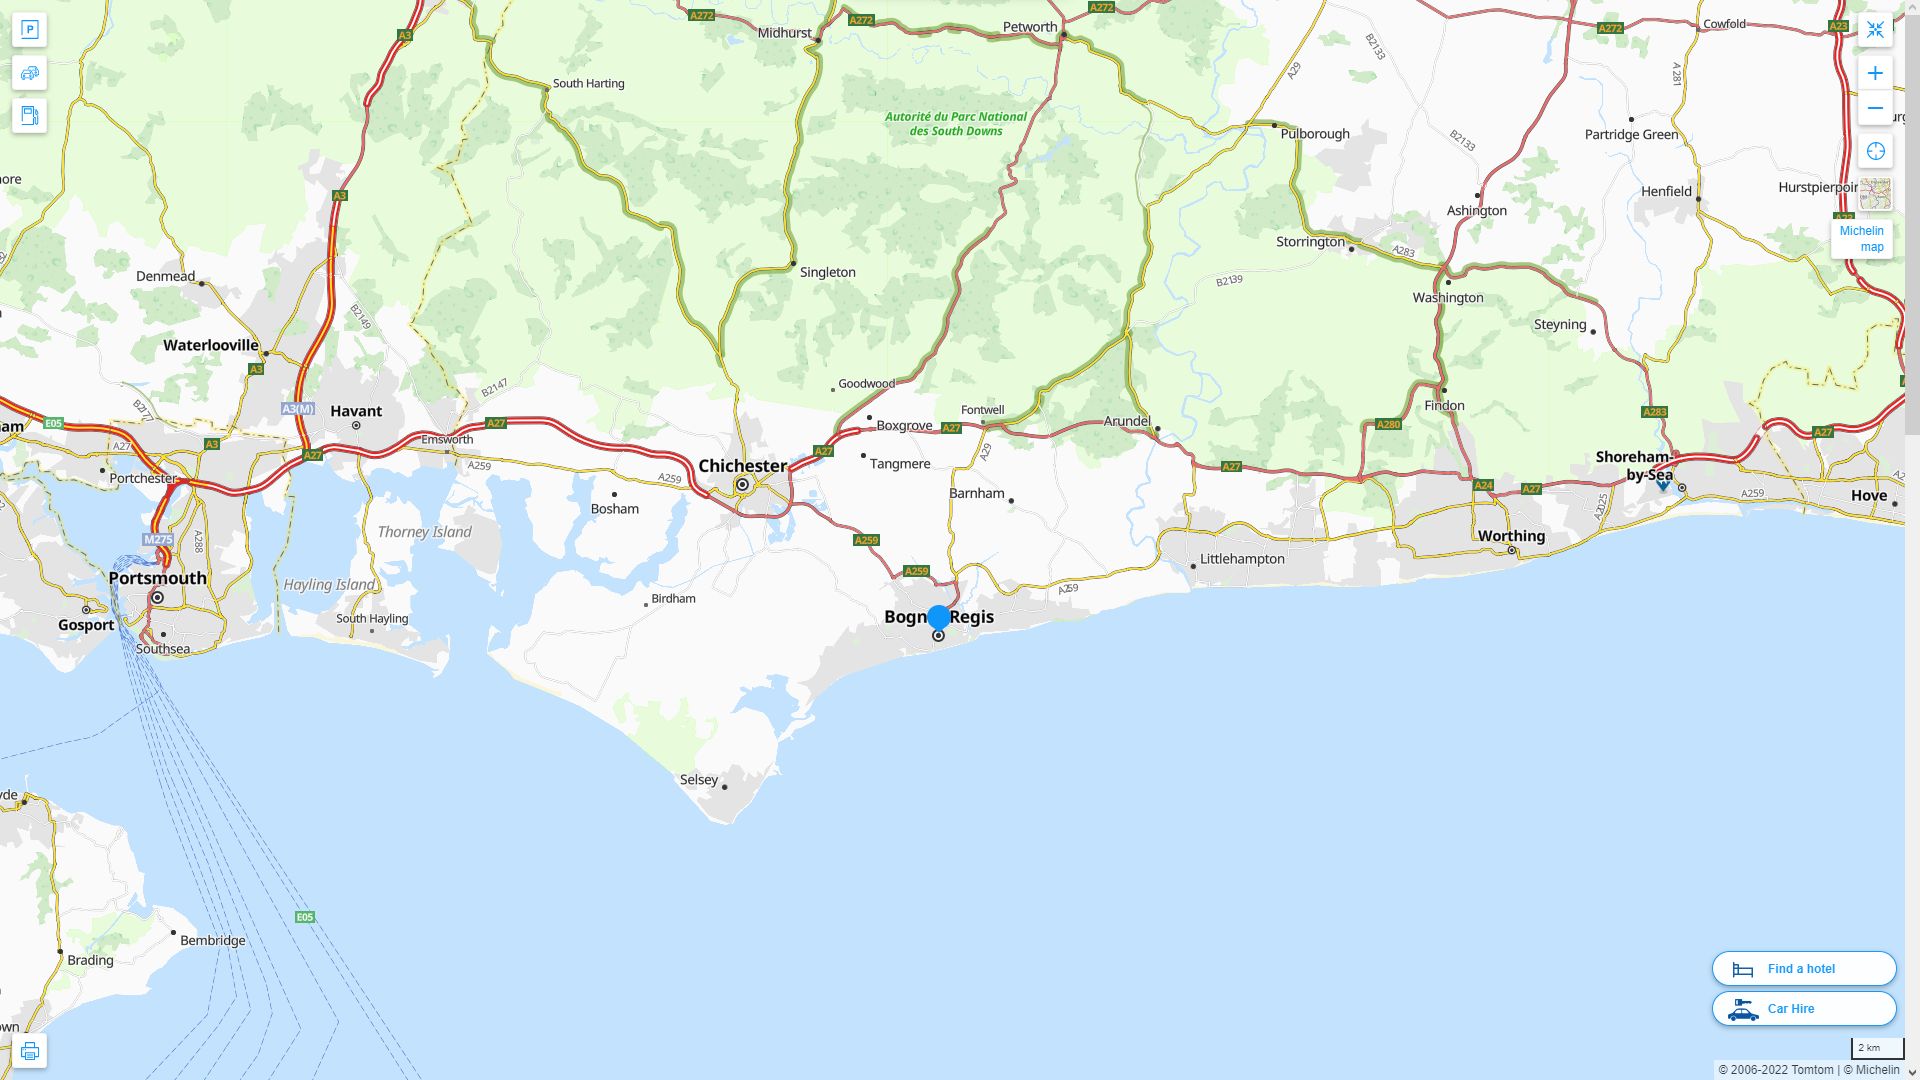 Bognor Regis Royaume Uni Autoroute et carte routiere